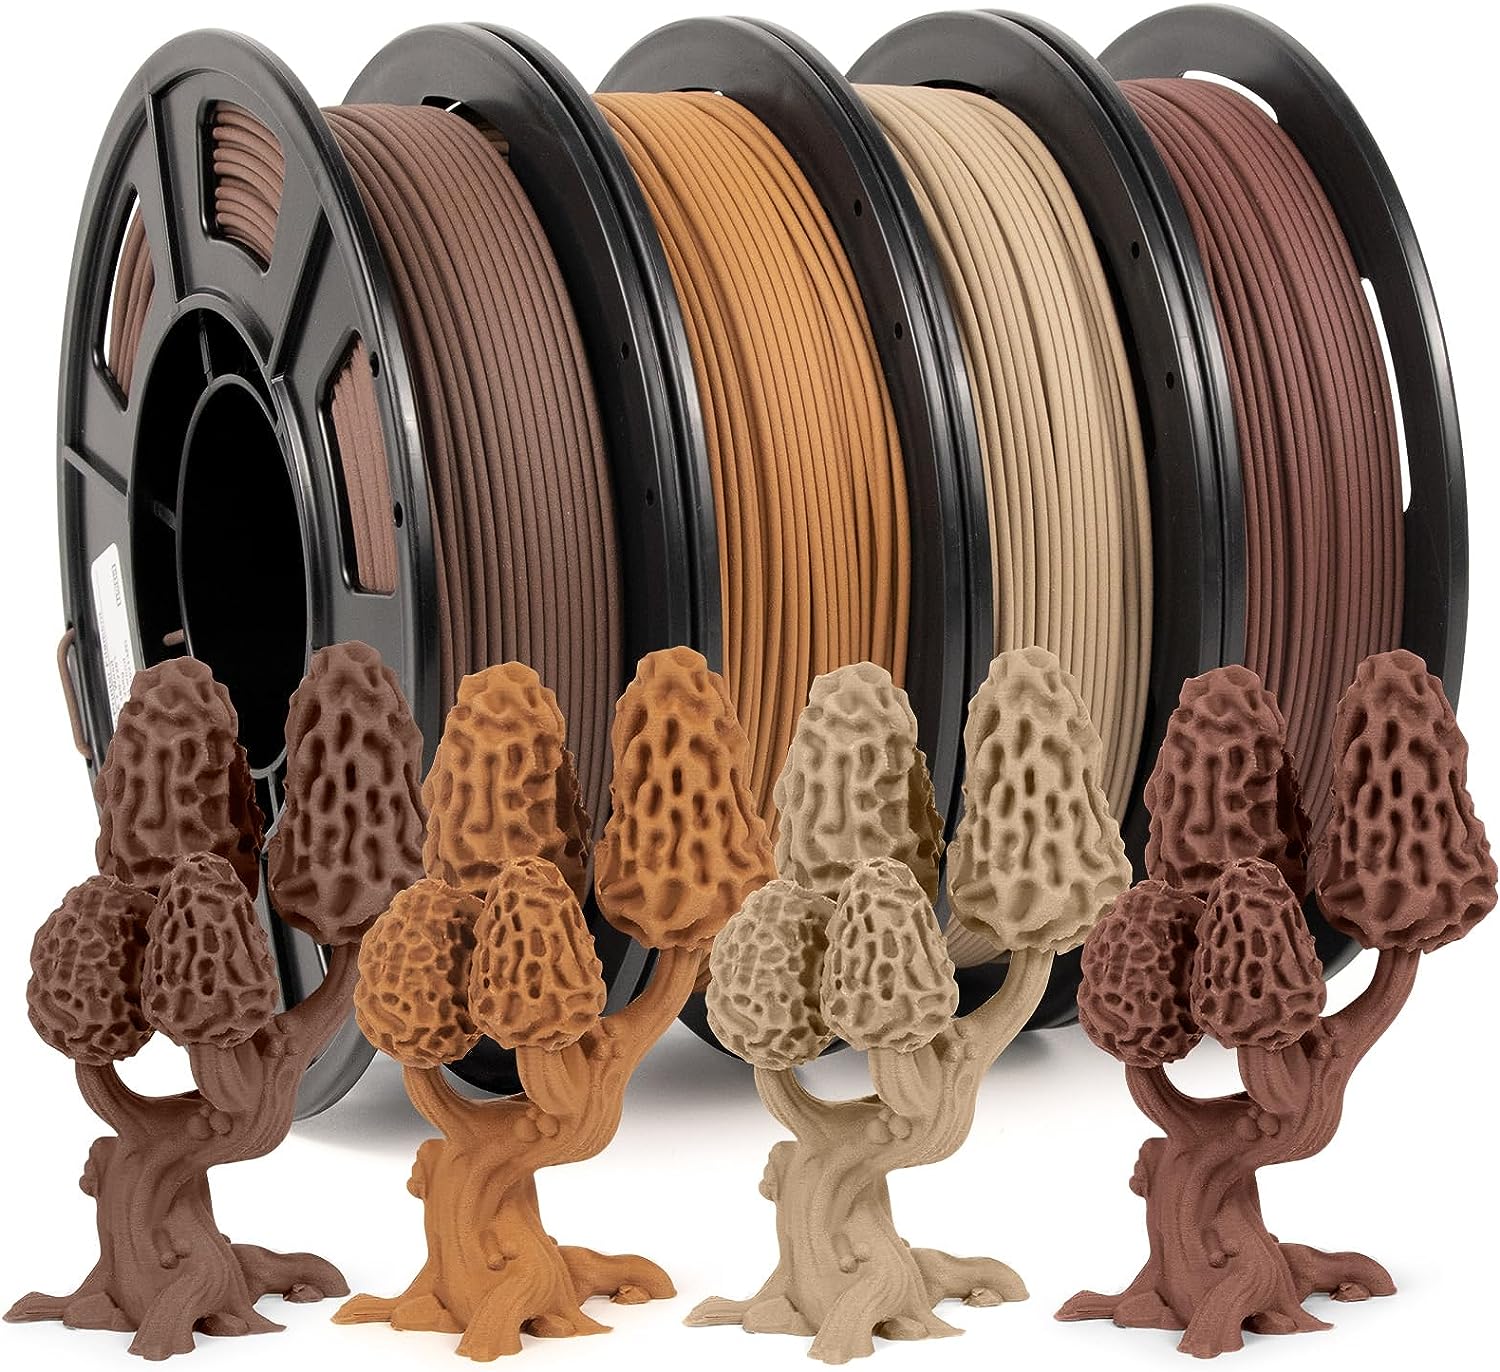 3D Printer Filament Bundle, Pla Filament Wood [...]